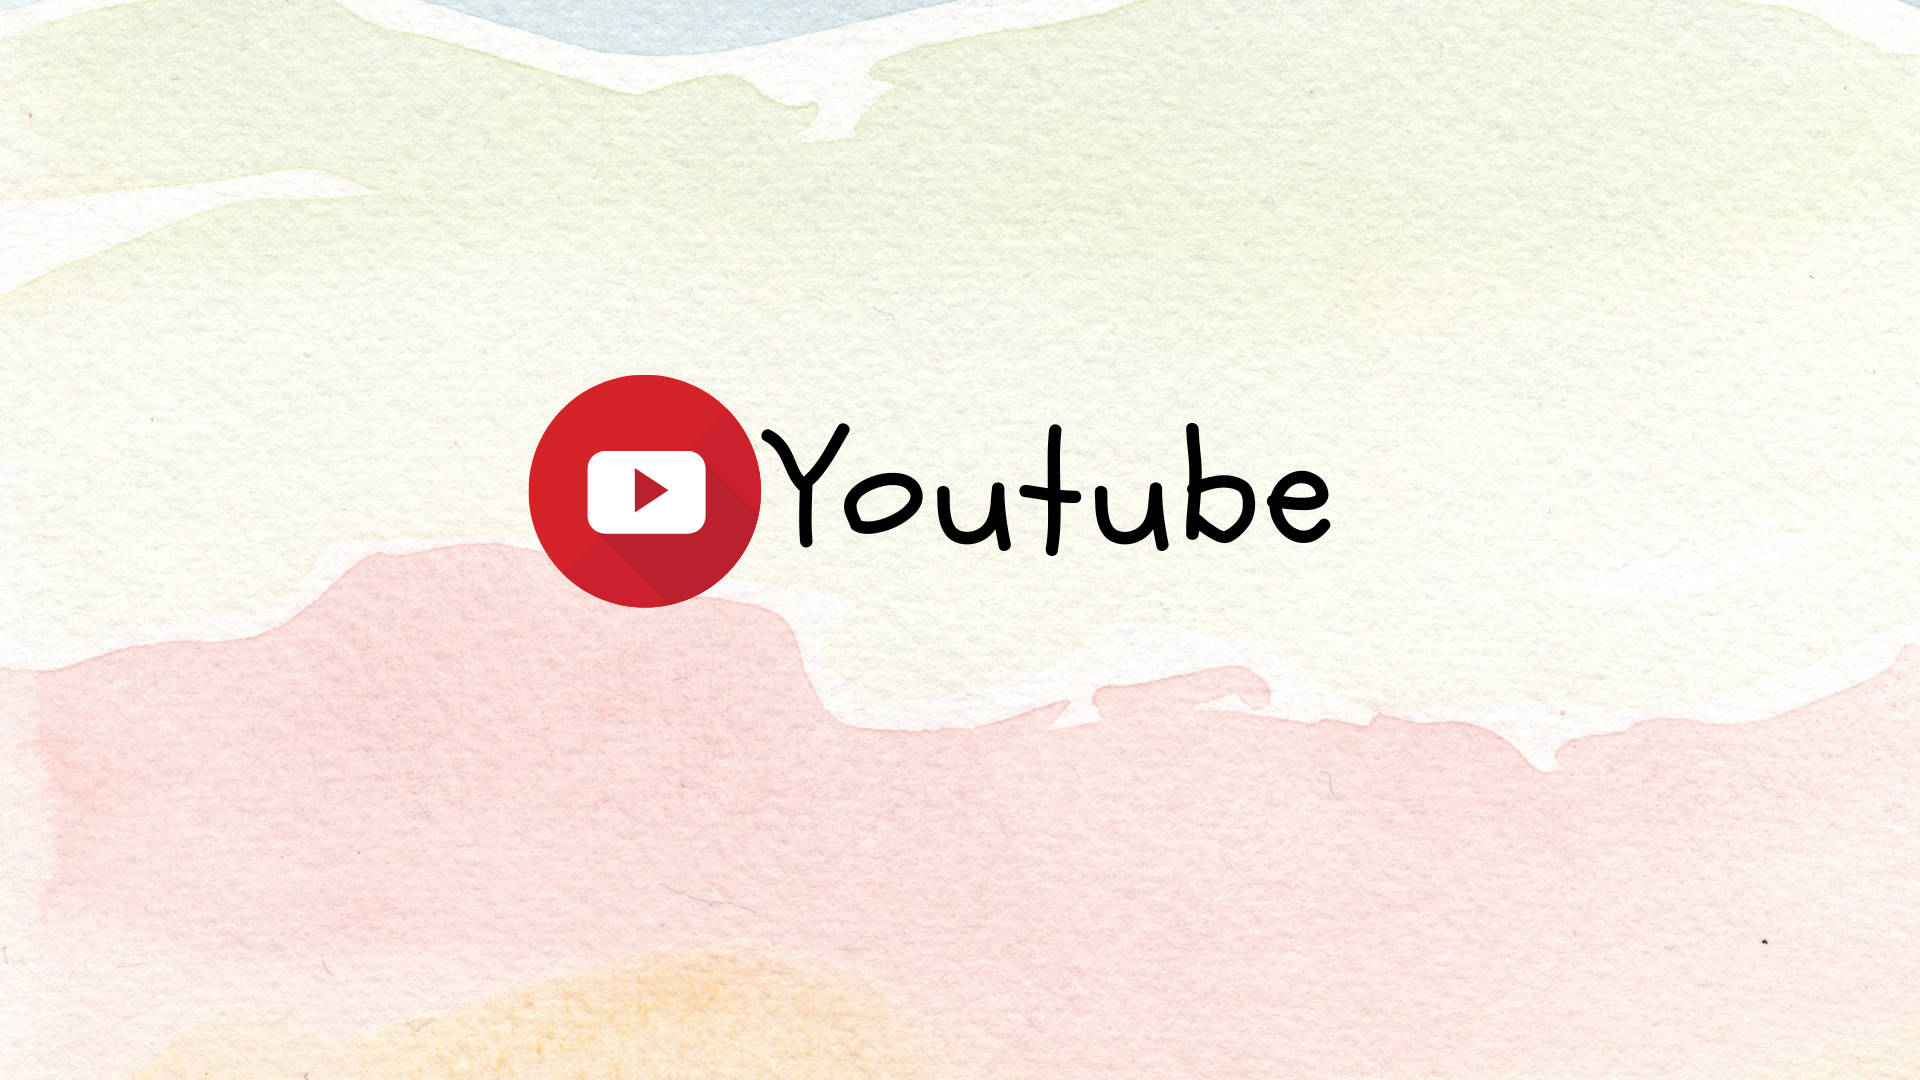 Logotipode Youtube Sobre Fondo Pastel Fondo de pantalla